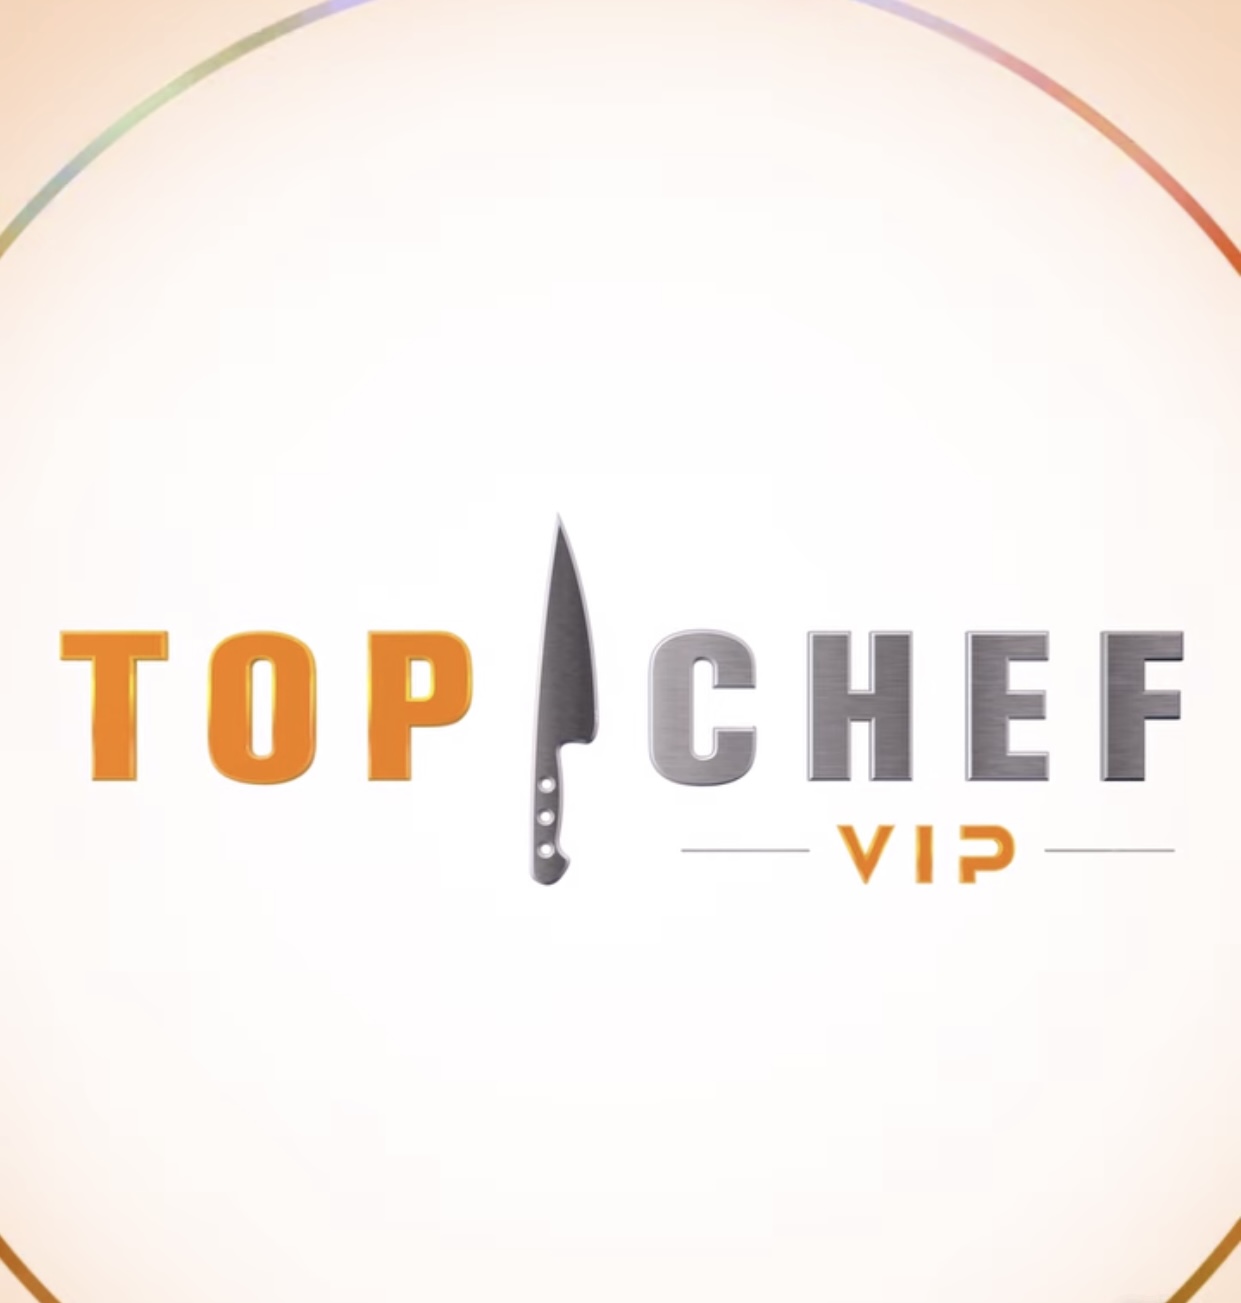 TOP CHEF VIP (LUN-VIE)